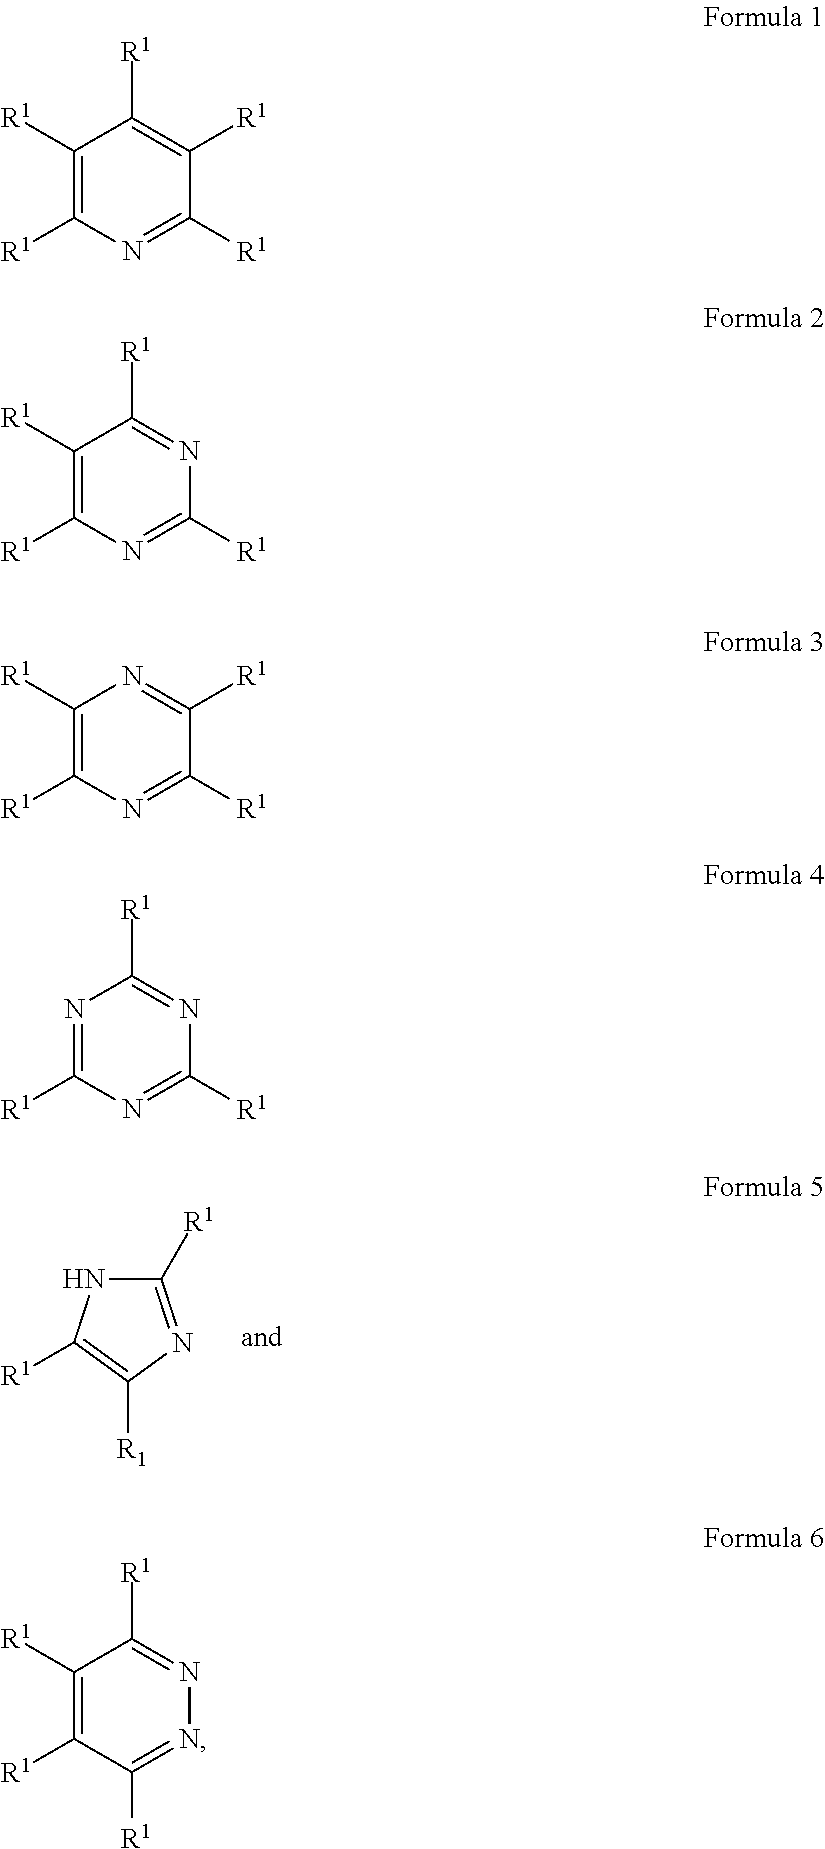 Production of Polyhydroxyalkanoate Foam